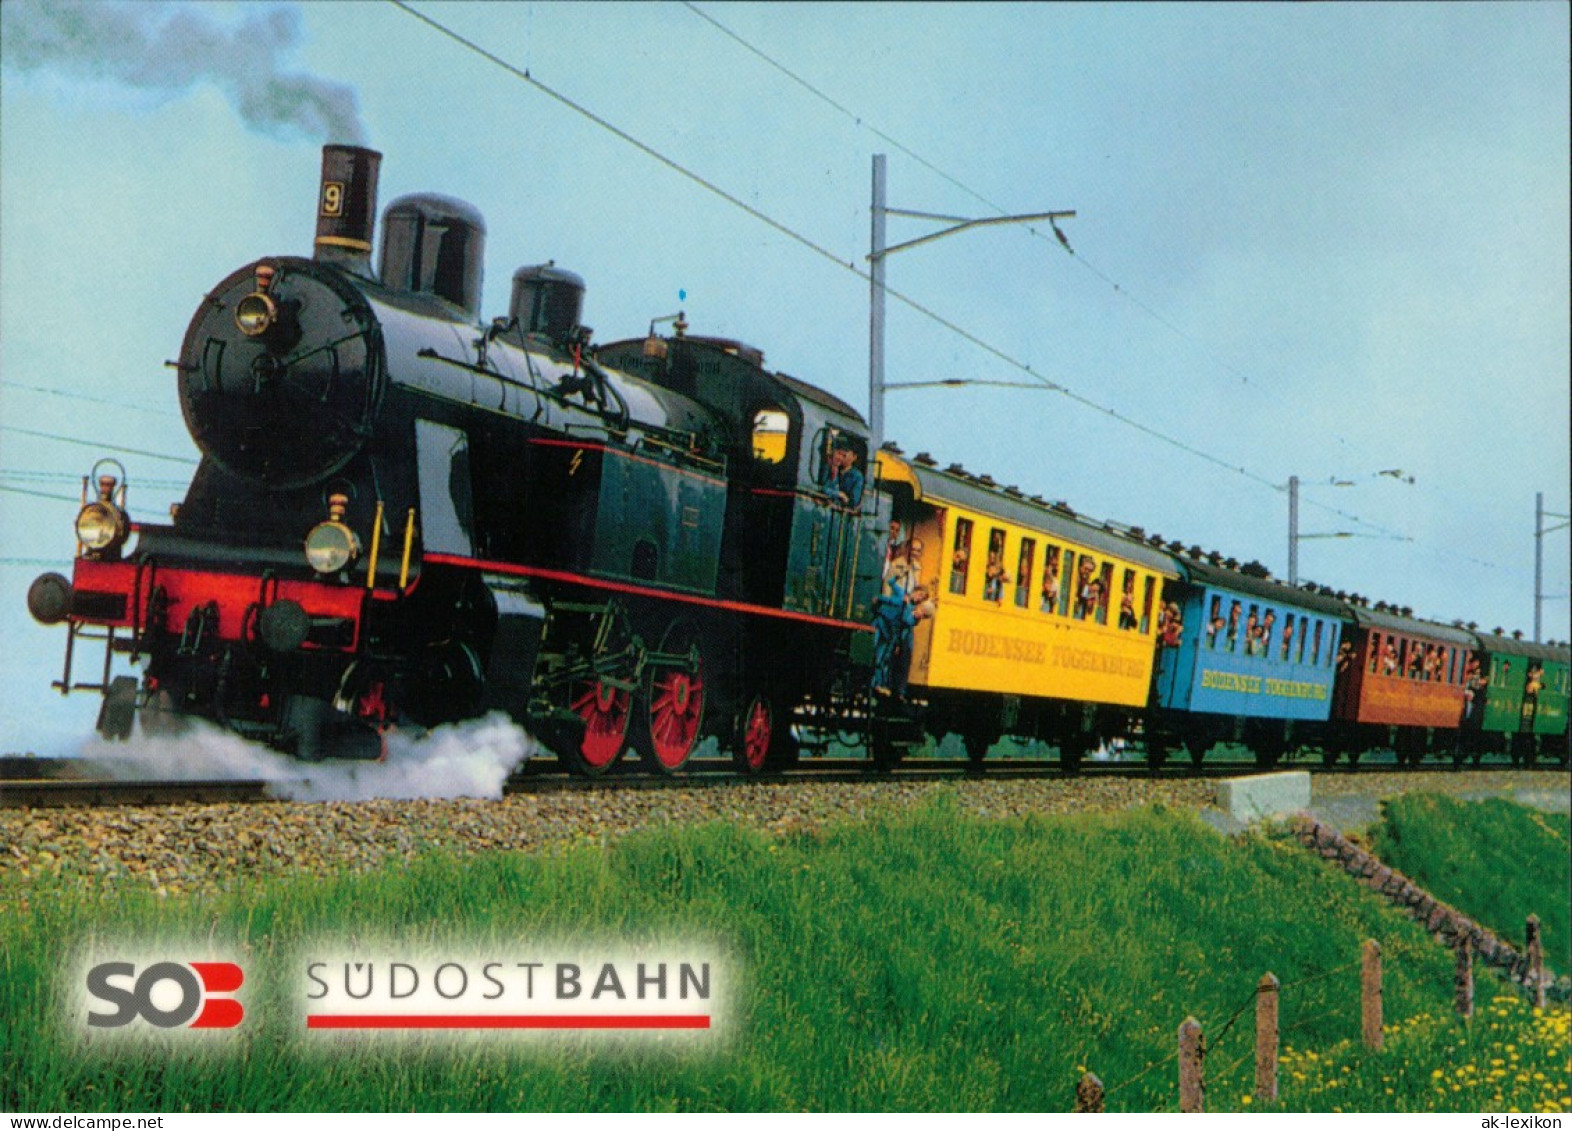 Eisenbahn Nostalgische Dampflok Eb 3/5 Mit Historischen Wagen 1980 Südostbahn - Trenes